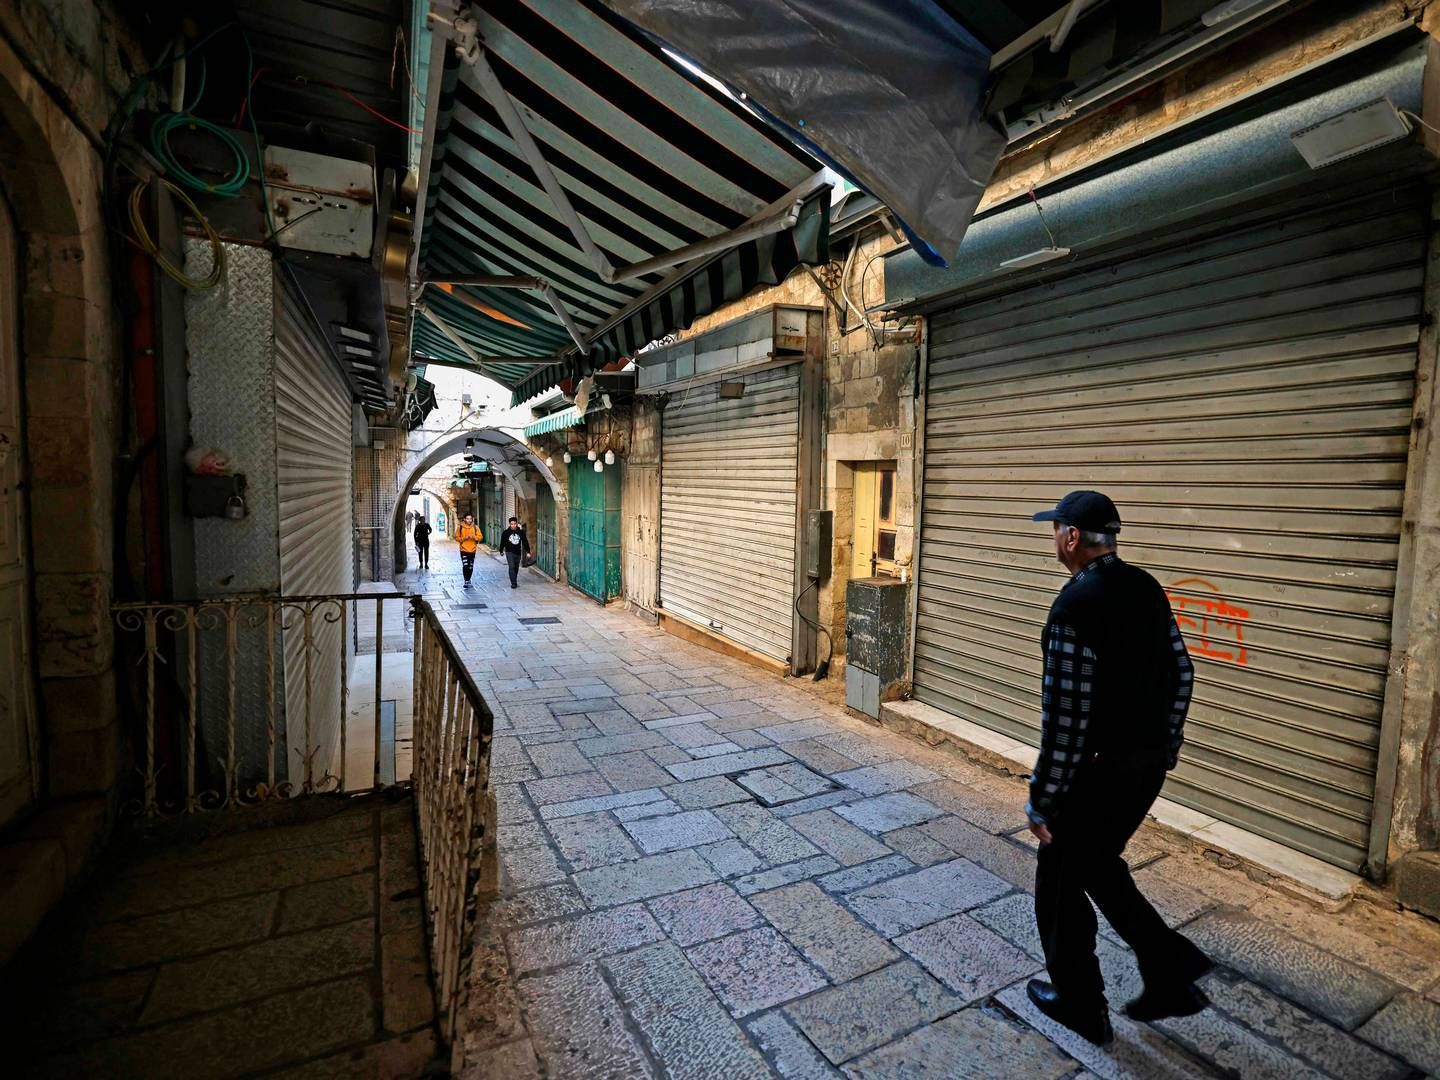 Hamas' terrorangreb på Israel den 7. oktober og Israels efterfølgende angreb i Gaza fik en række skandinaviske detailvirksomheder til at lukke deres butikker. Nu er de stort set alle genåbnet godt to måneder efter. | Foto: Ahmad Gharabli